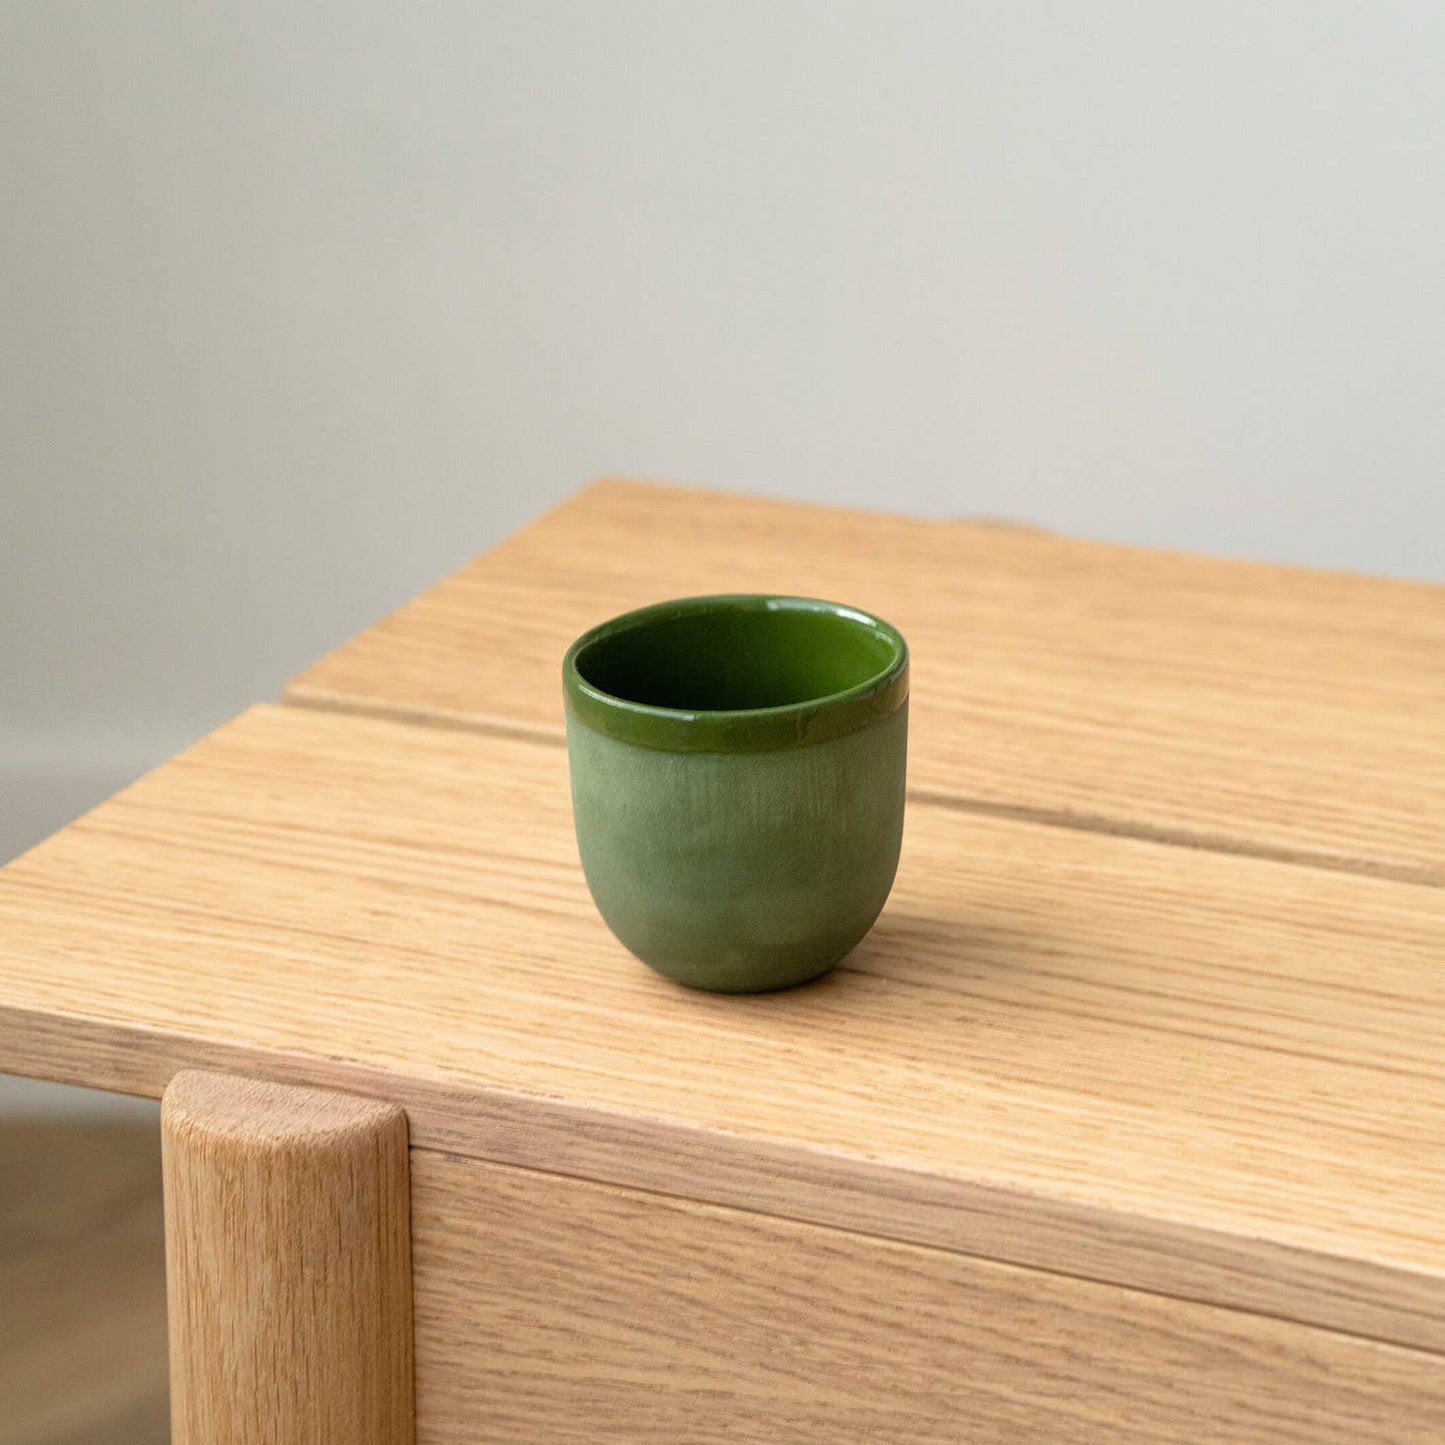 Ethical Trade Co Home Green / Espresso Cup / Plain Handmade Ukrainian Porcelain Cups